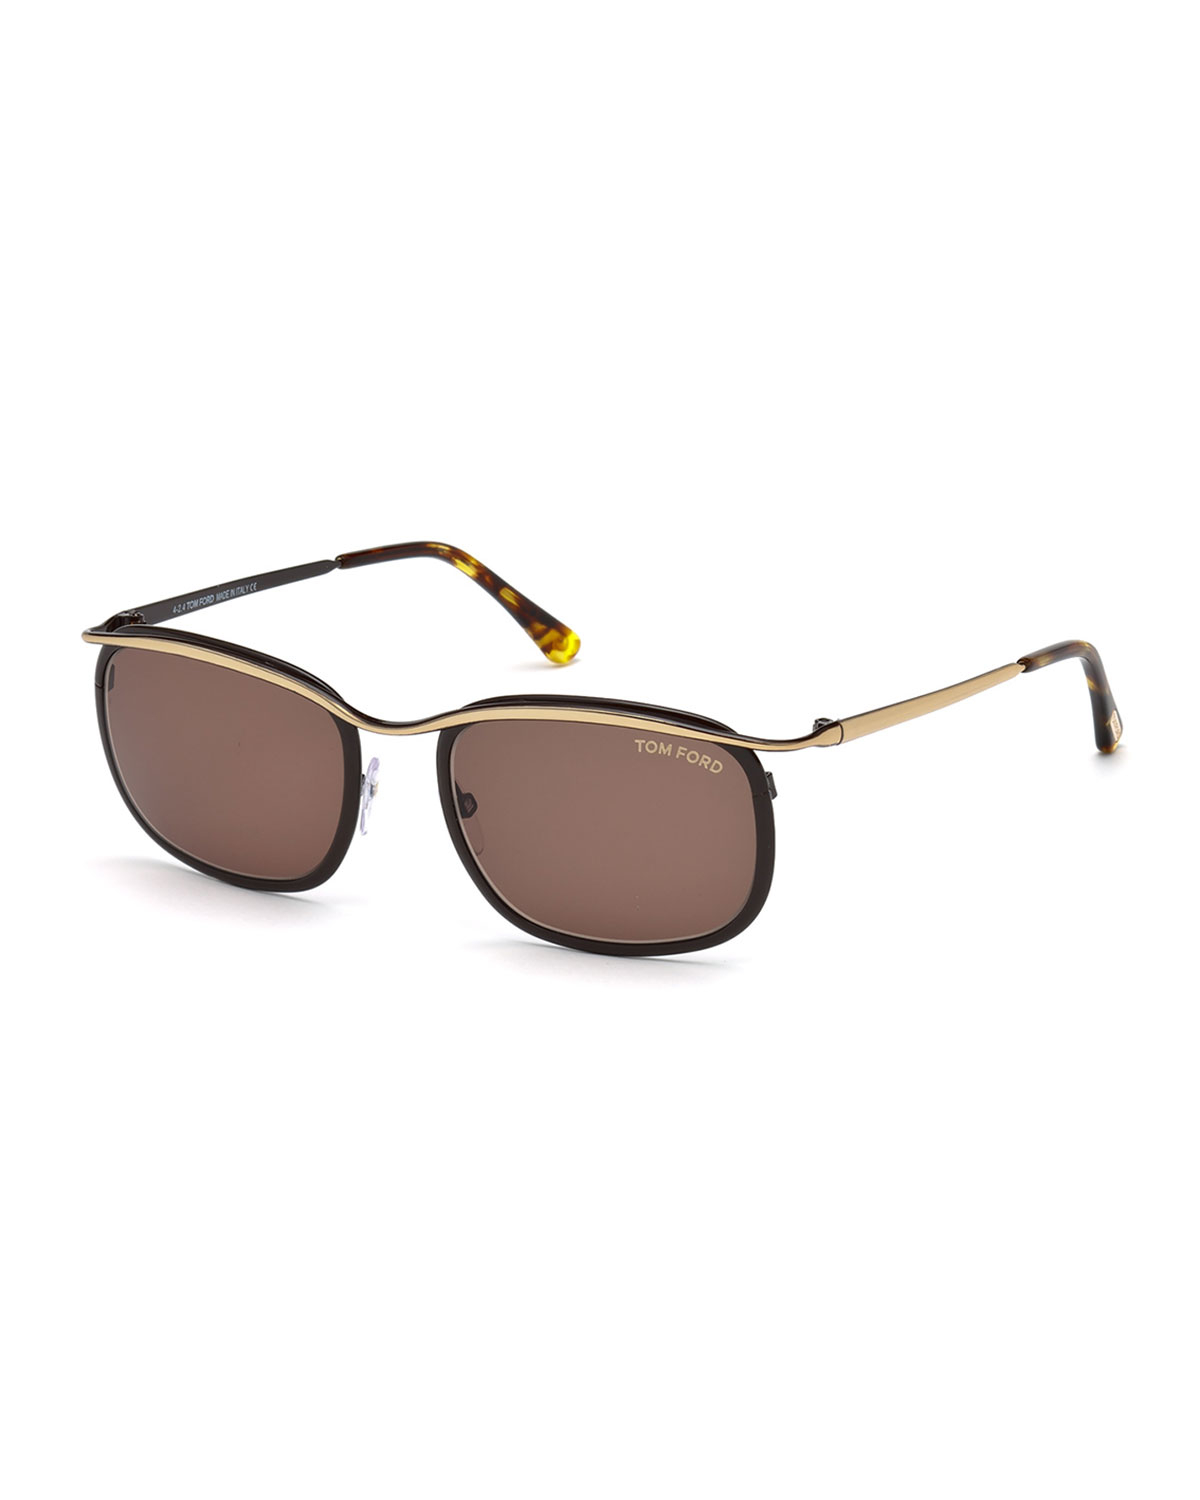 Tom ford henry sunglasses rose gold/black #7